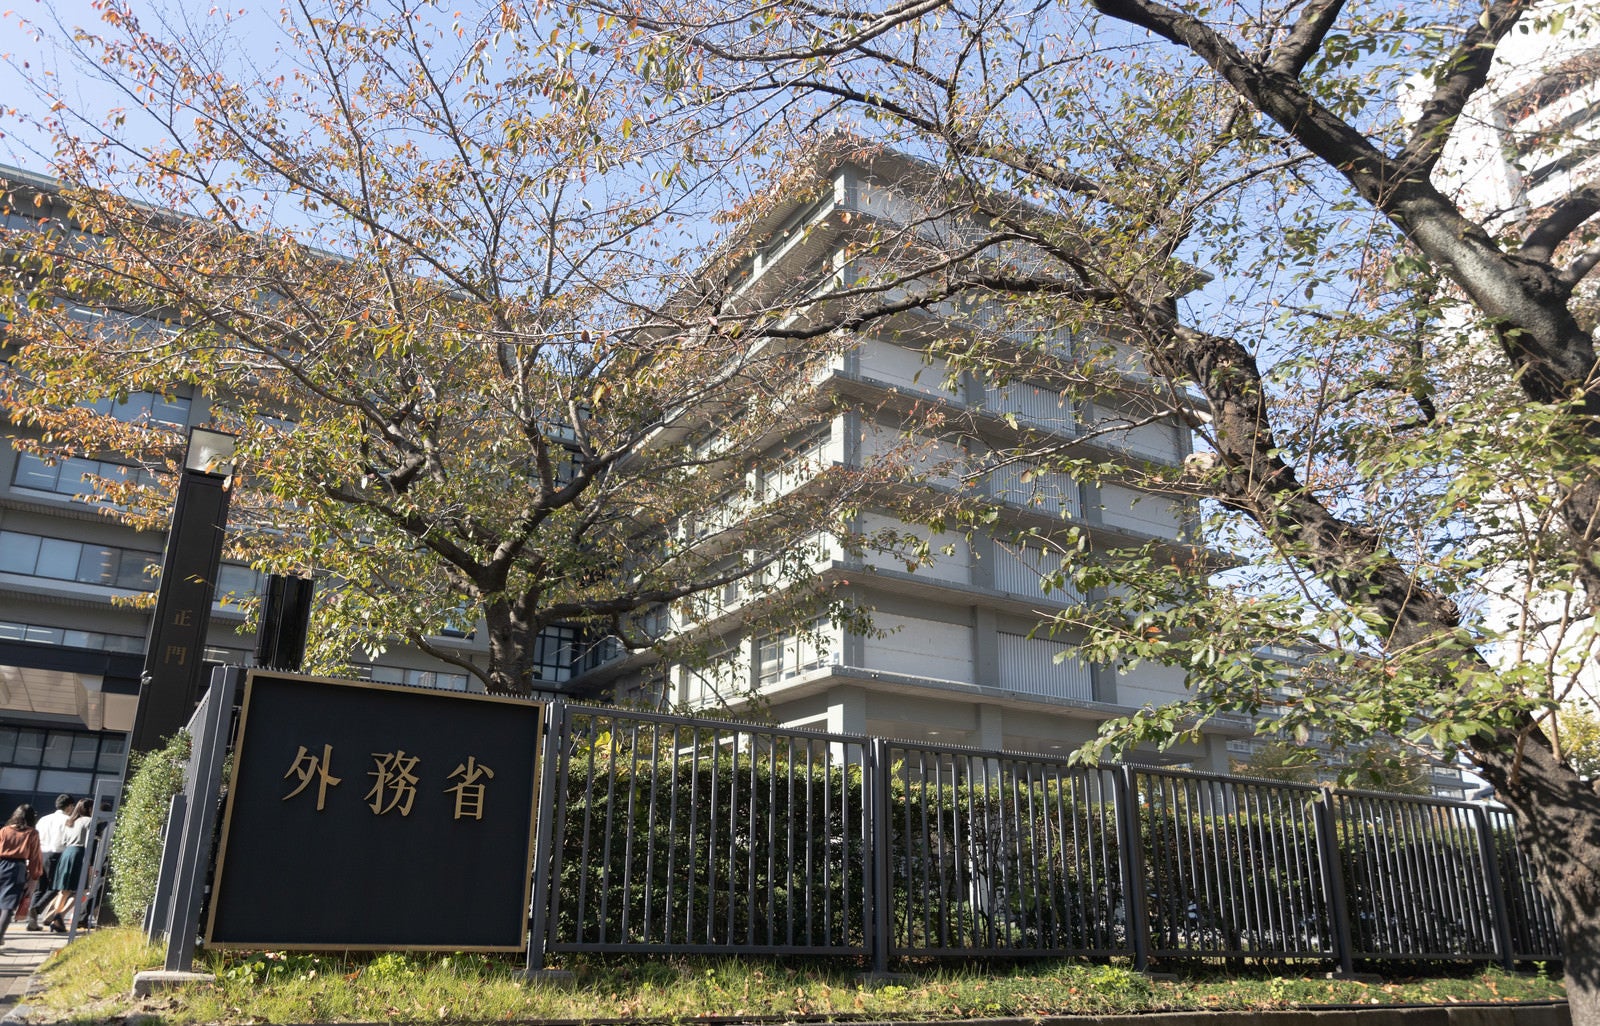 「外務省庁舎の前」の写真